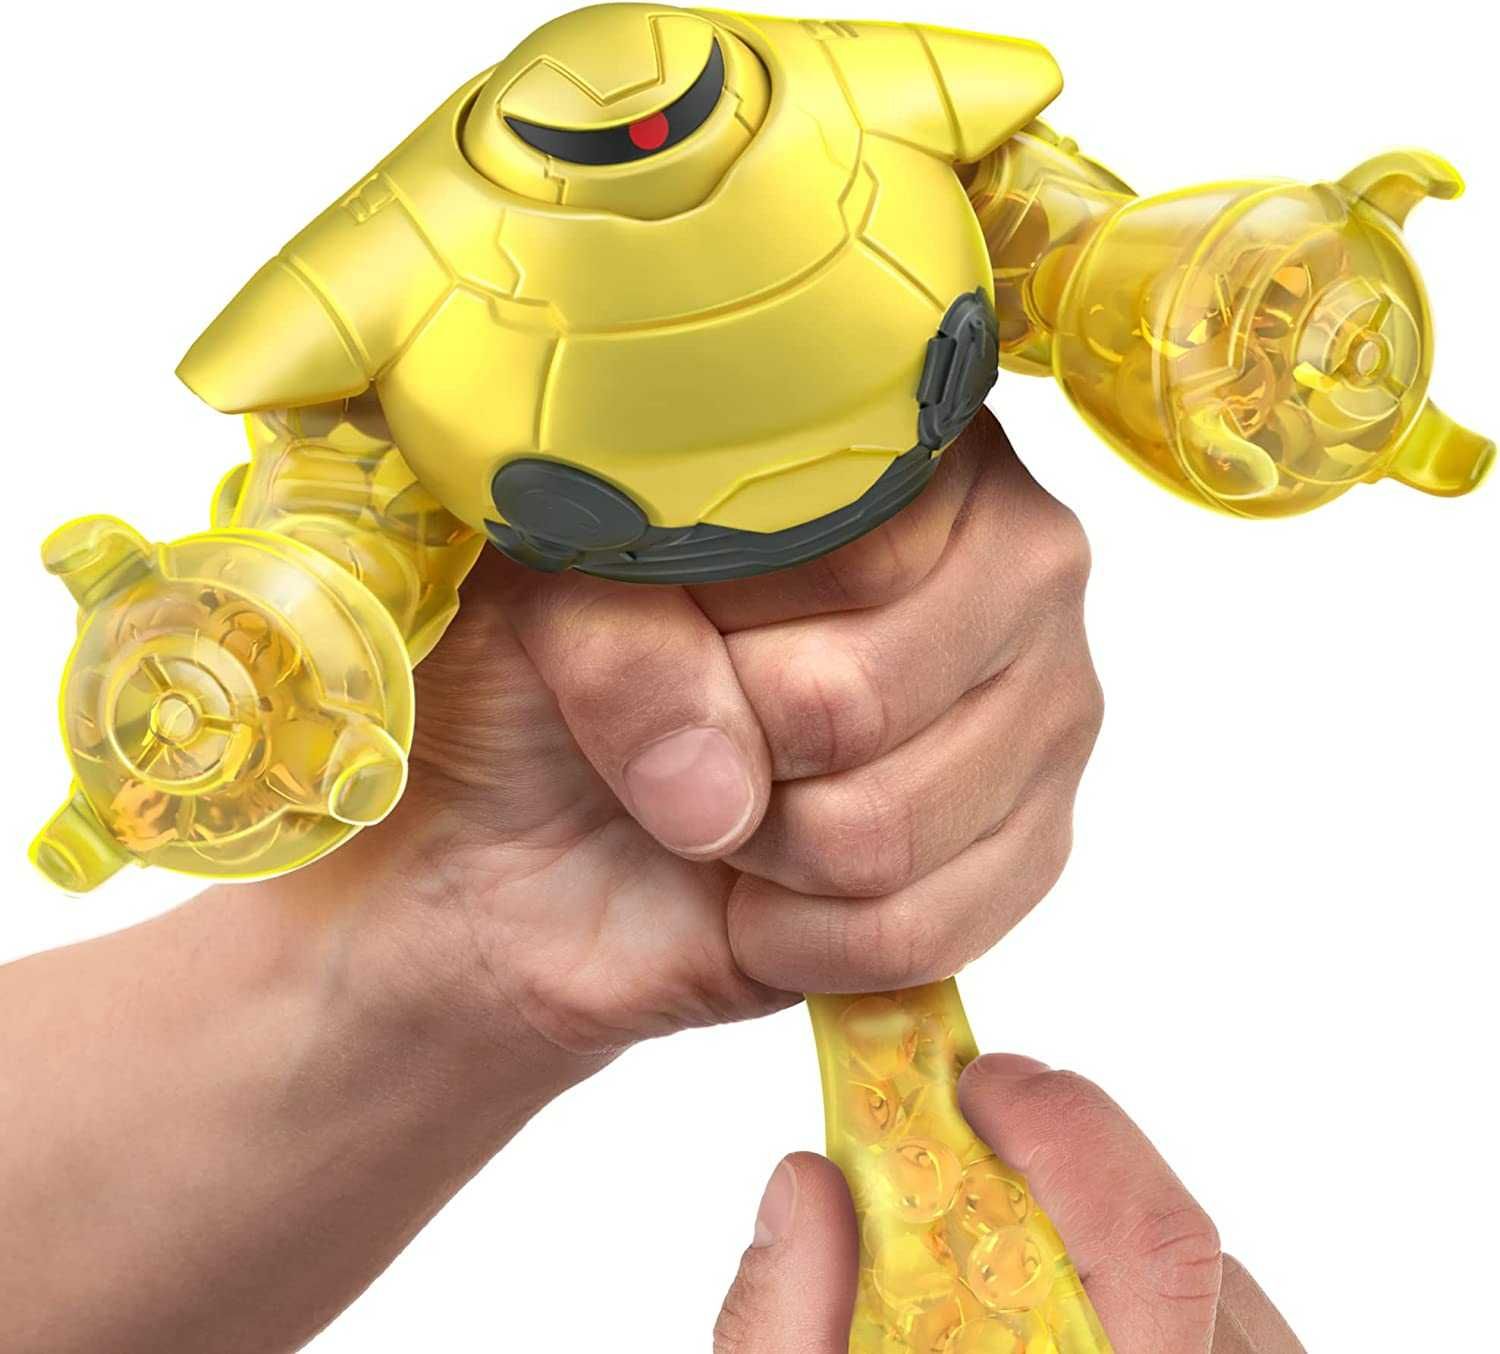 Набір Goo Jit Zu Lightyear Buzz Zyclops Базз Історія іграшок Гуджитсу